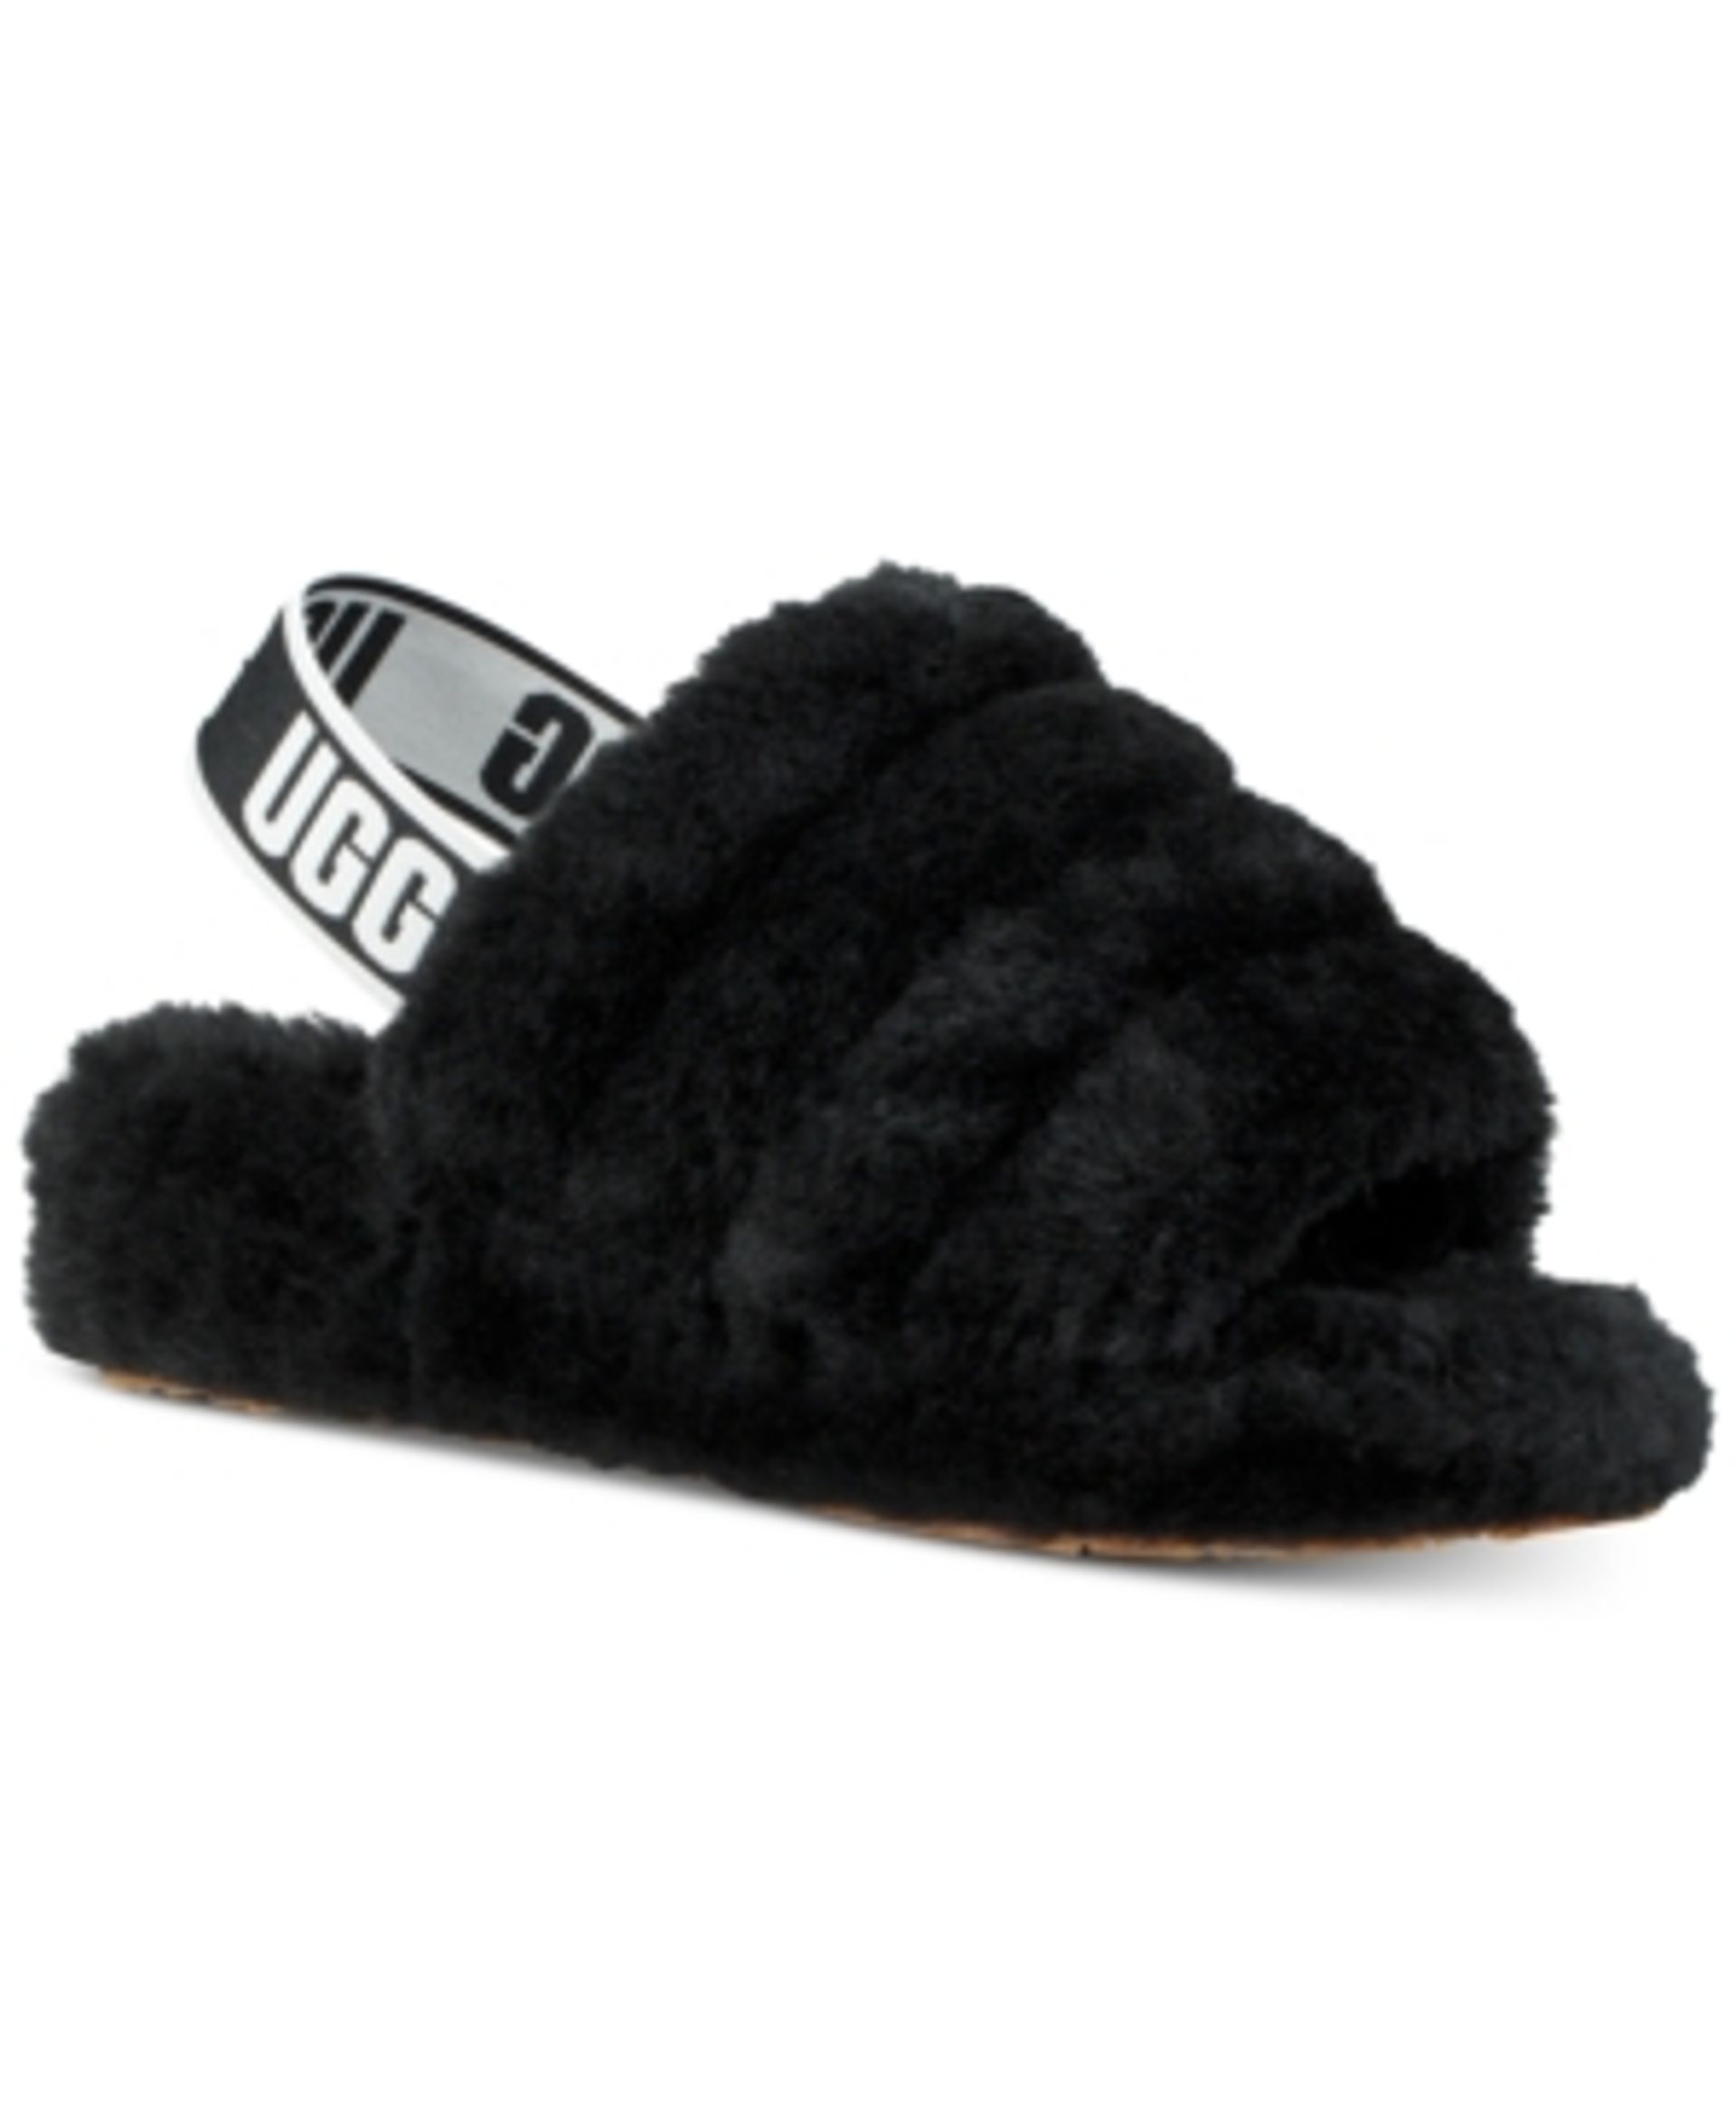 cloud nine slippers